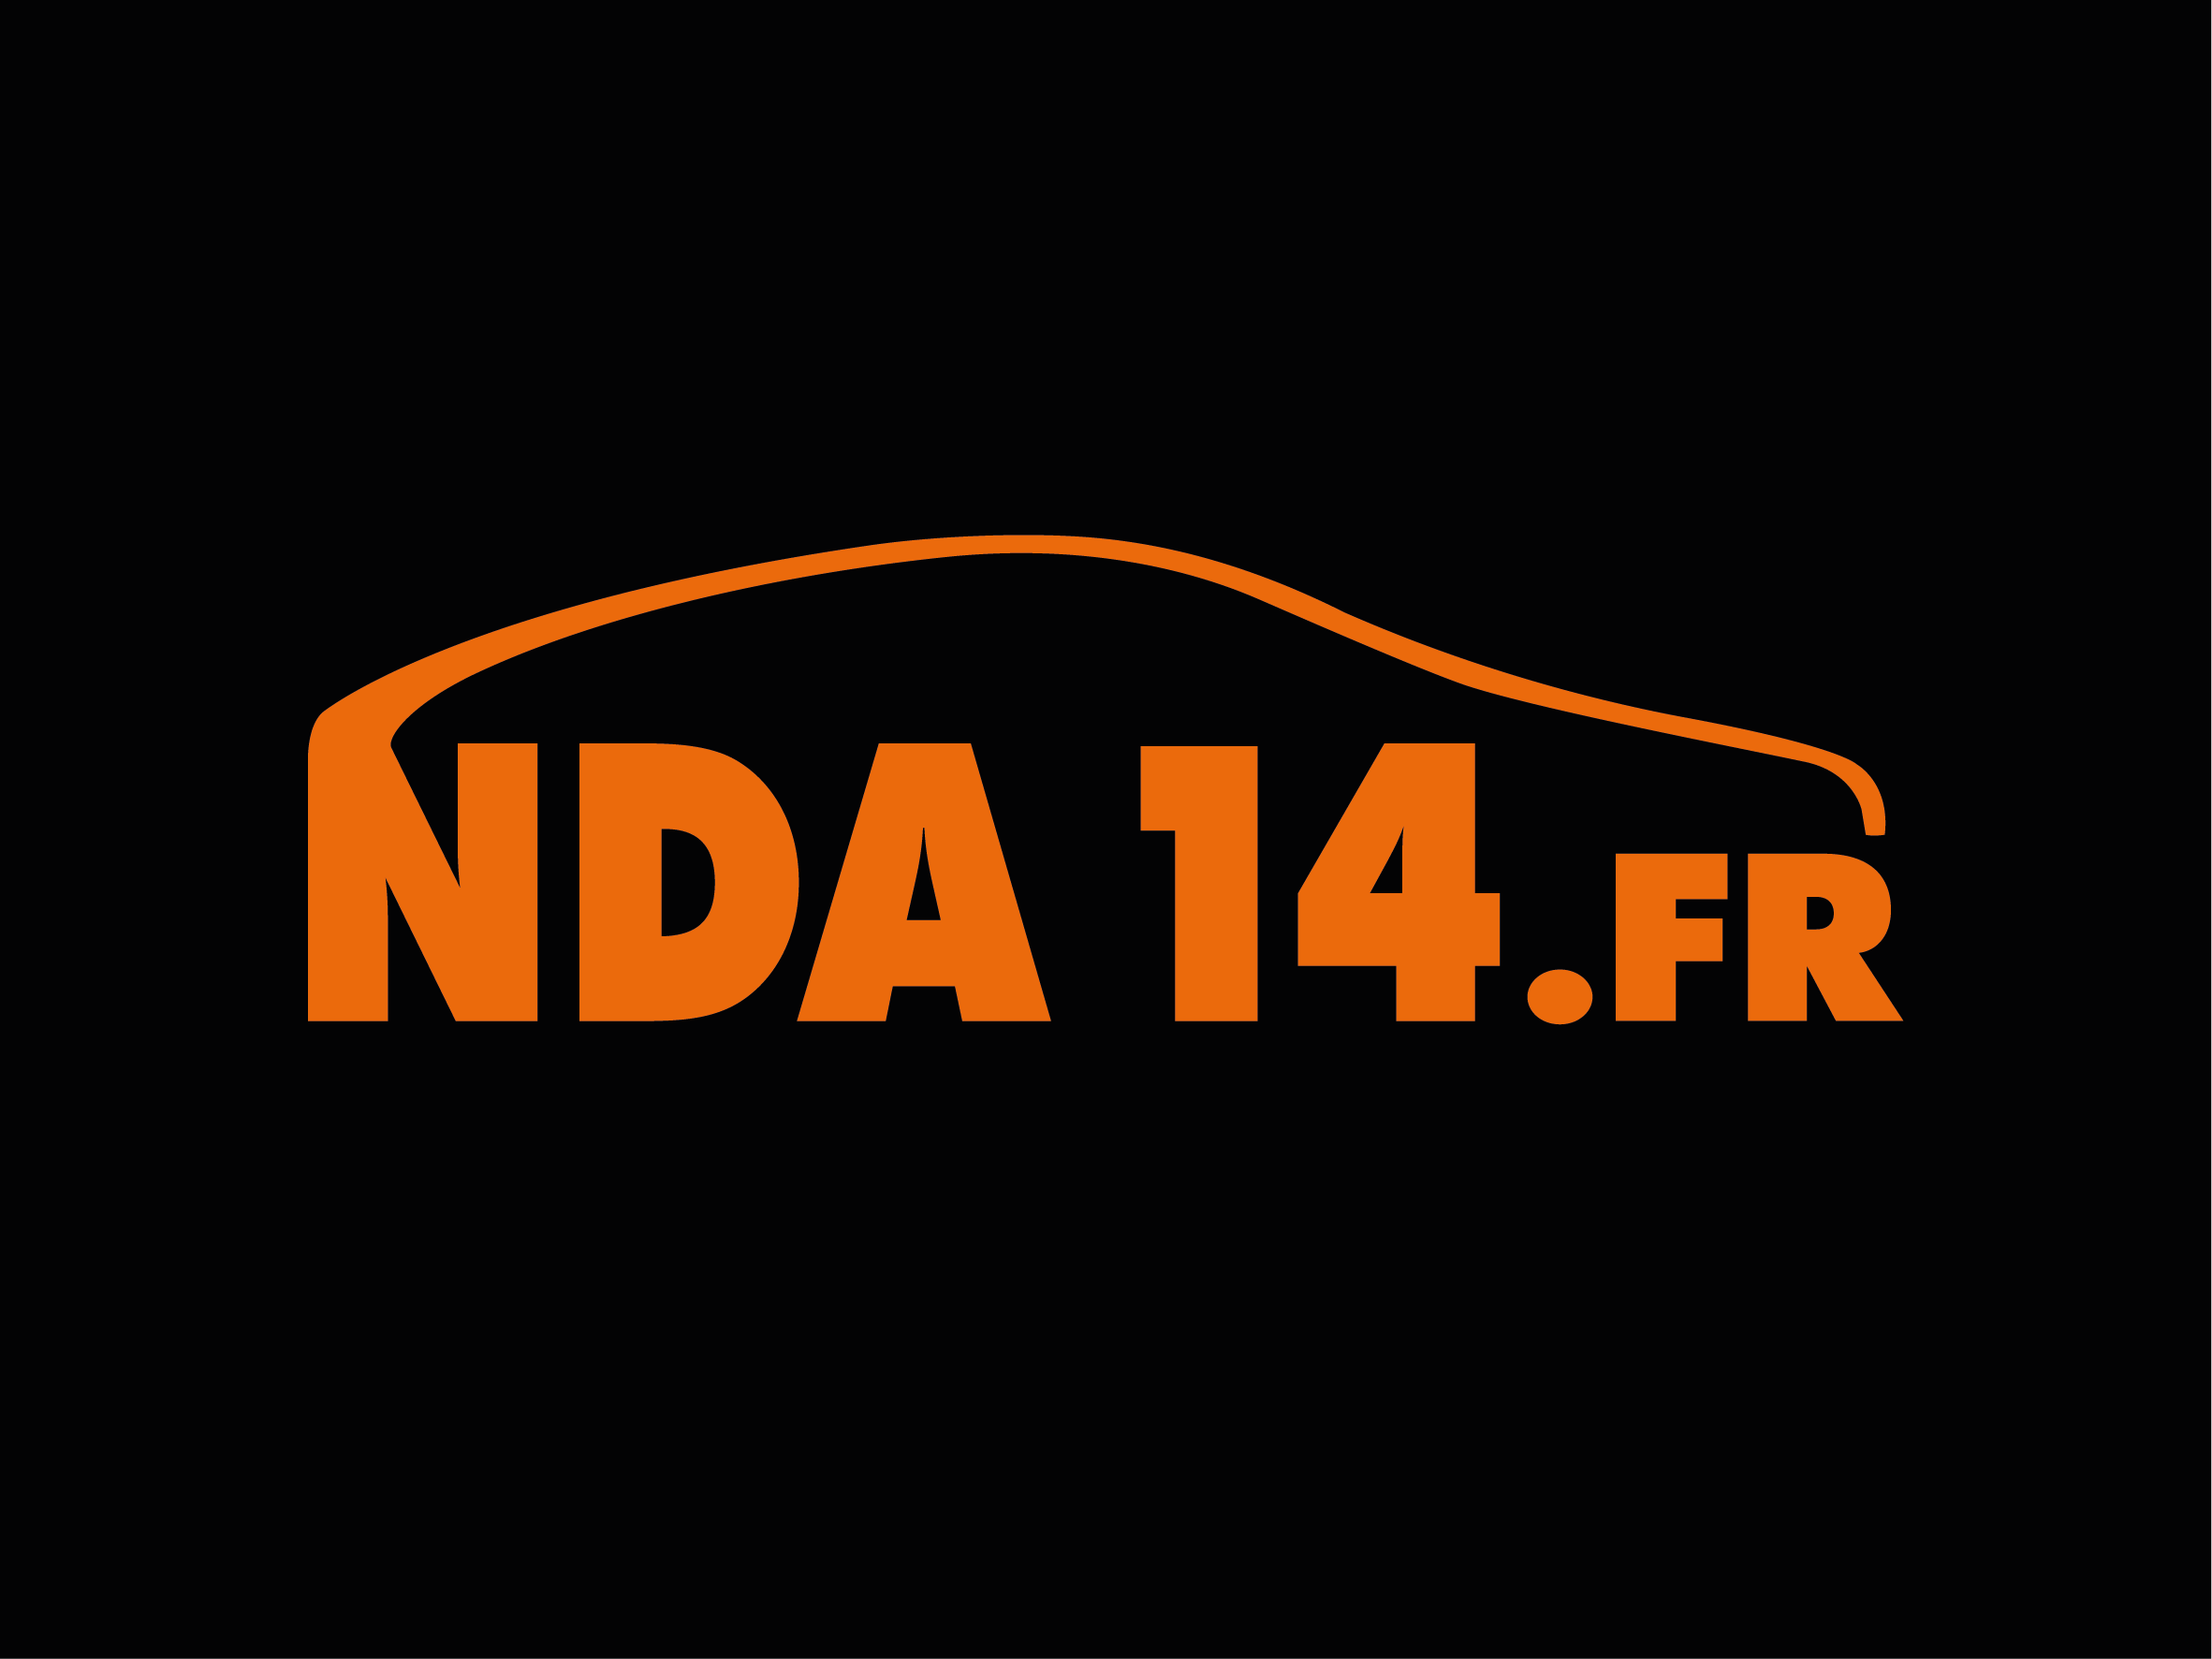 NDA14, GTA14, GTA Bayeux